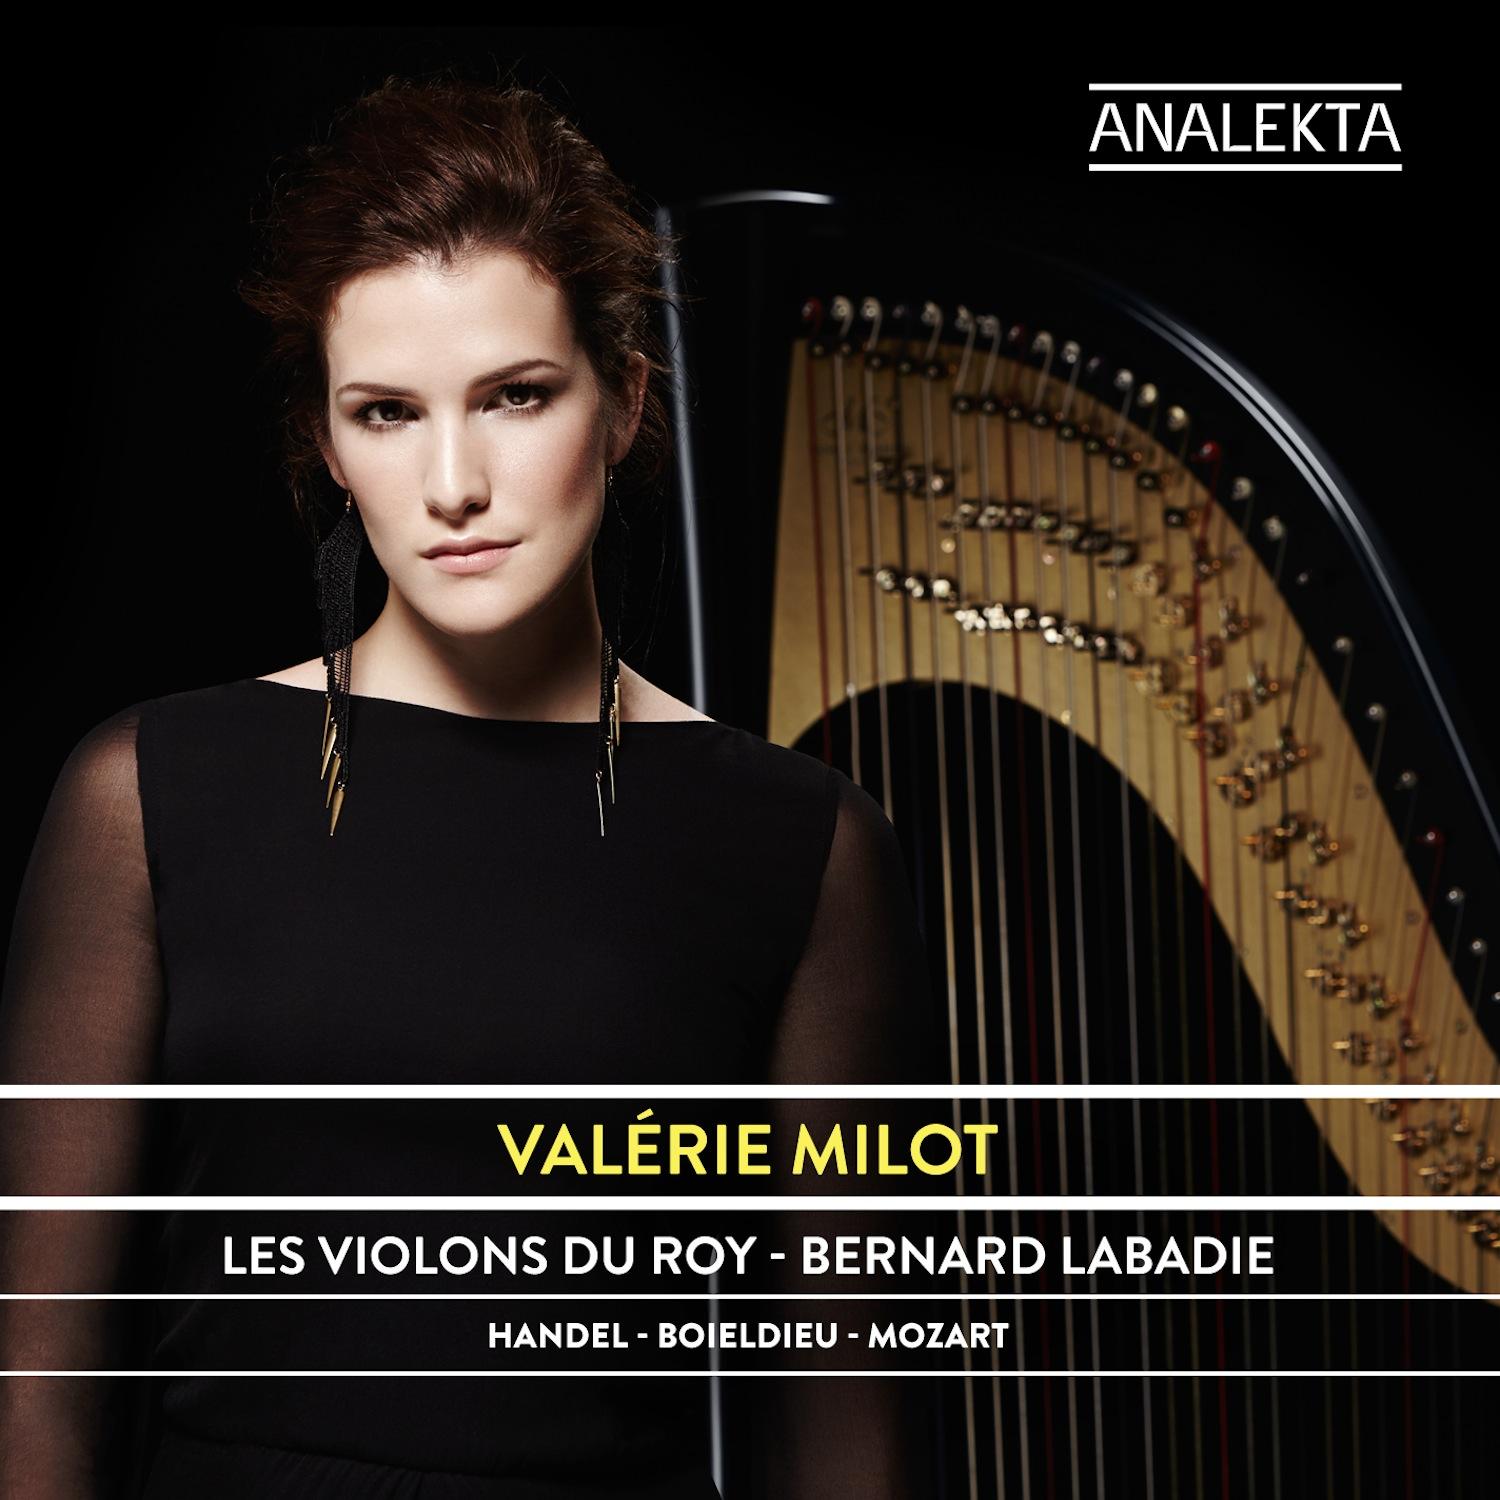 Concerto for Harp In C Major: III. Rondeau  Allegro agitato